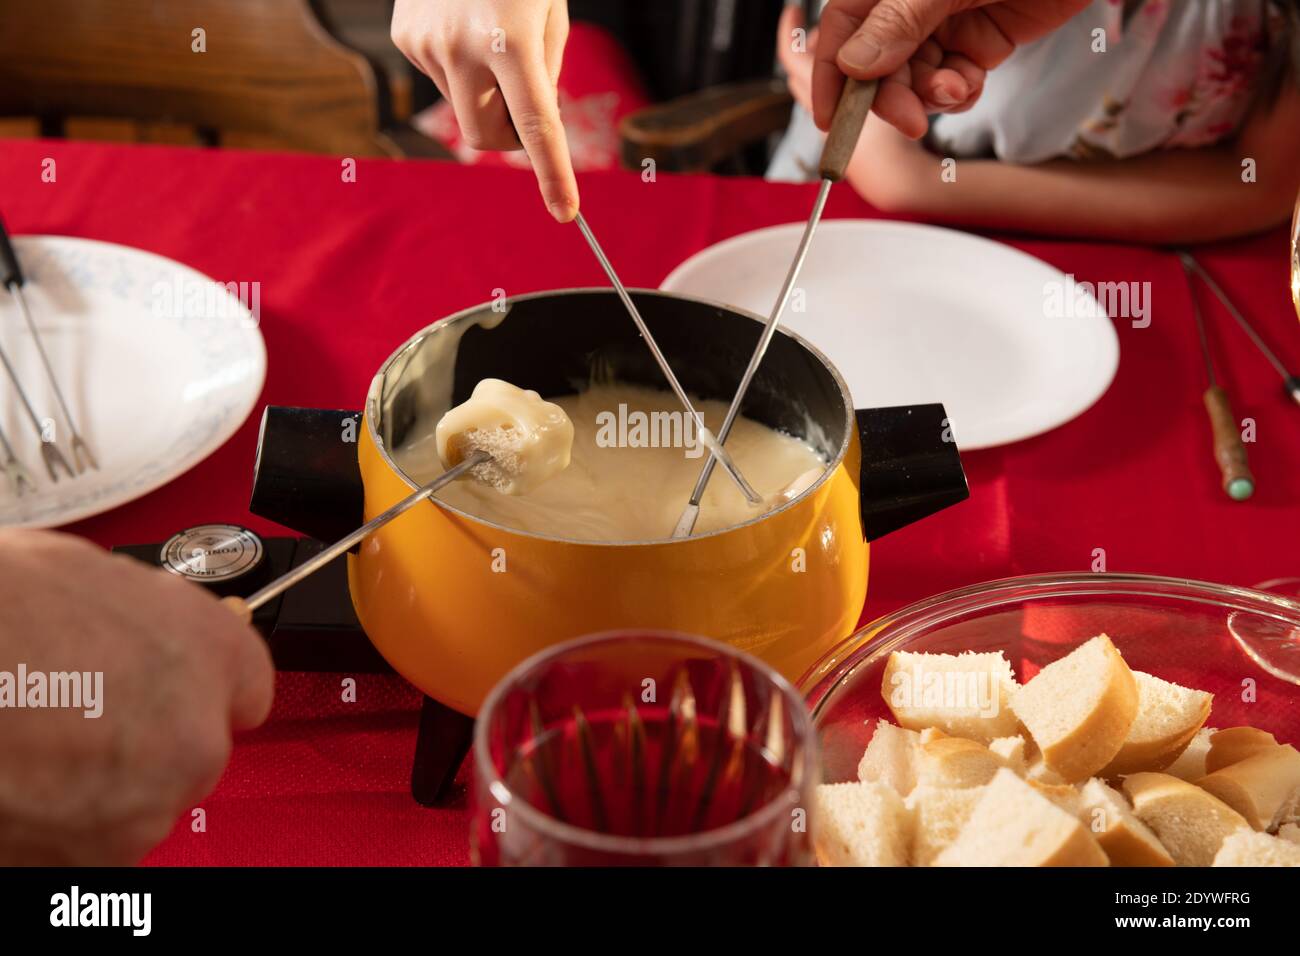 Le pain étant servi au fromage suisse pour le dîner à fondue Banque D'Images